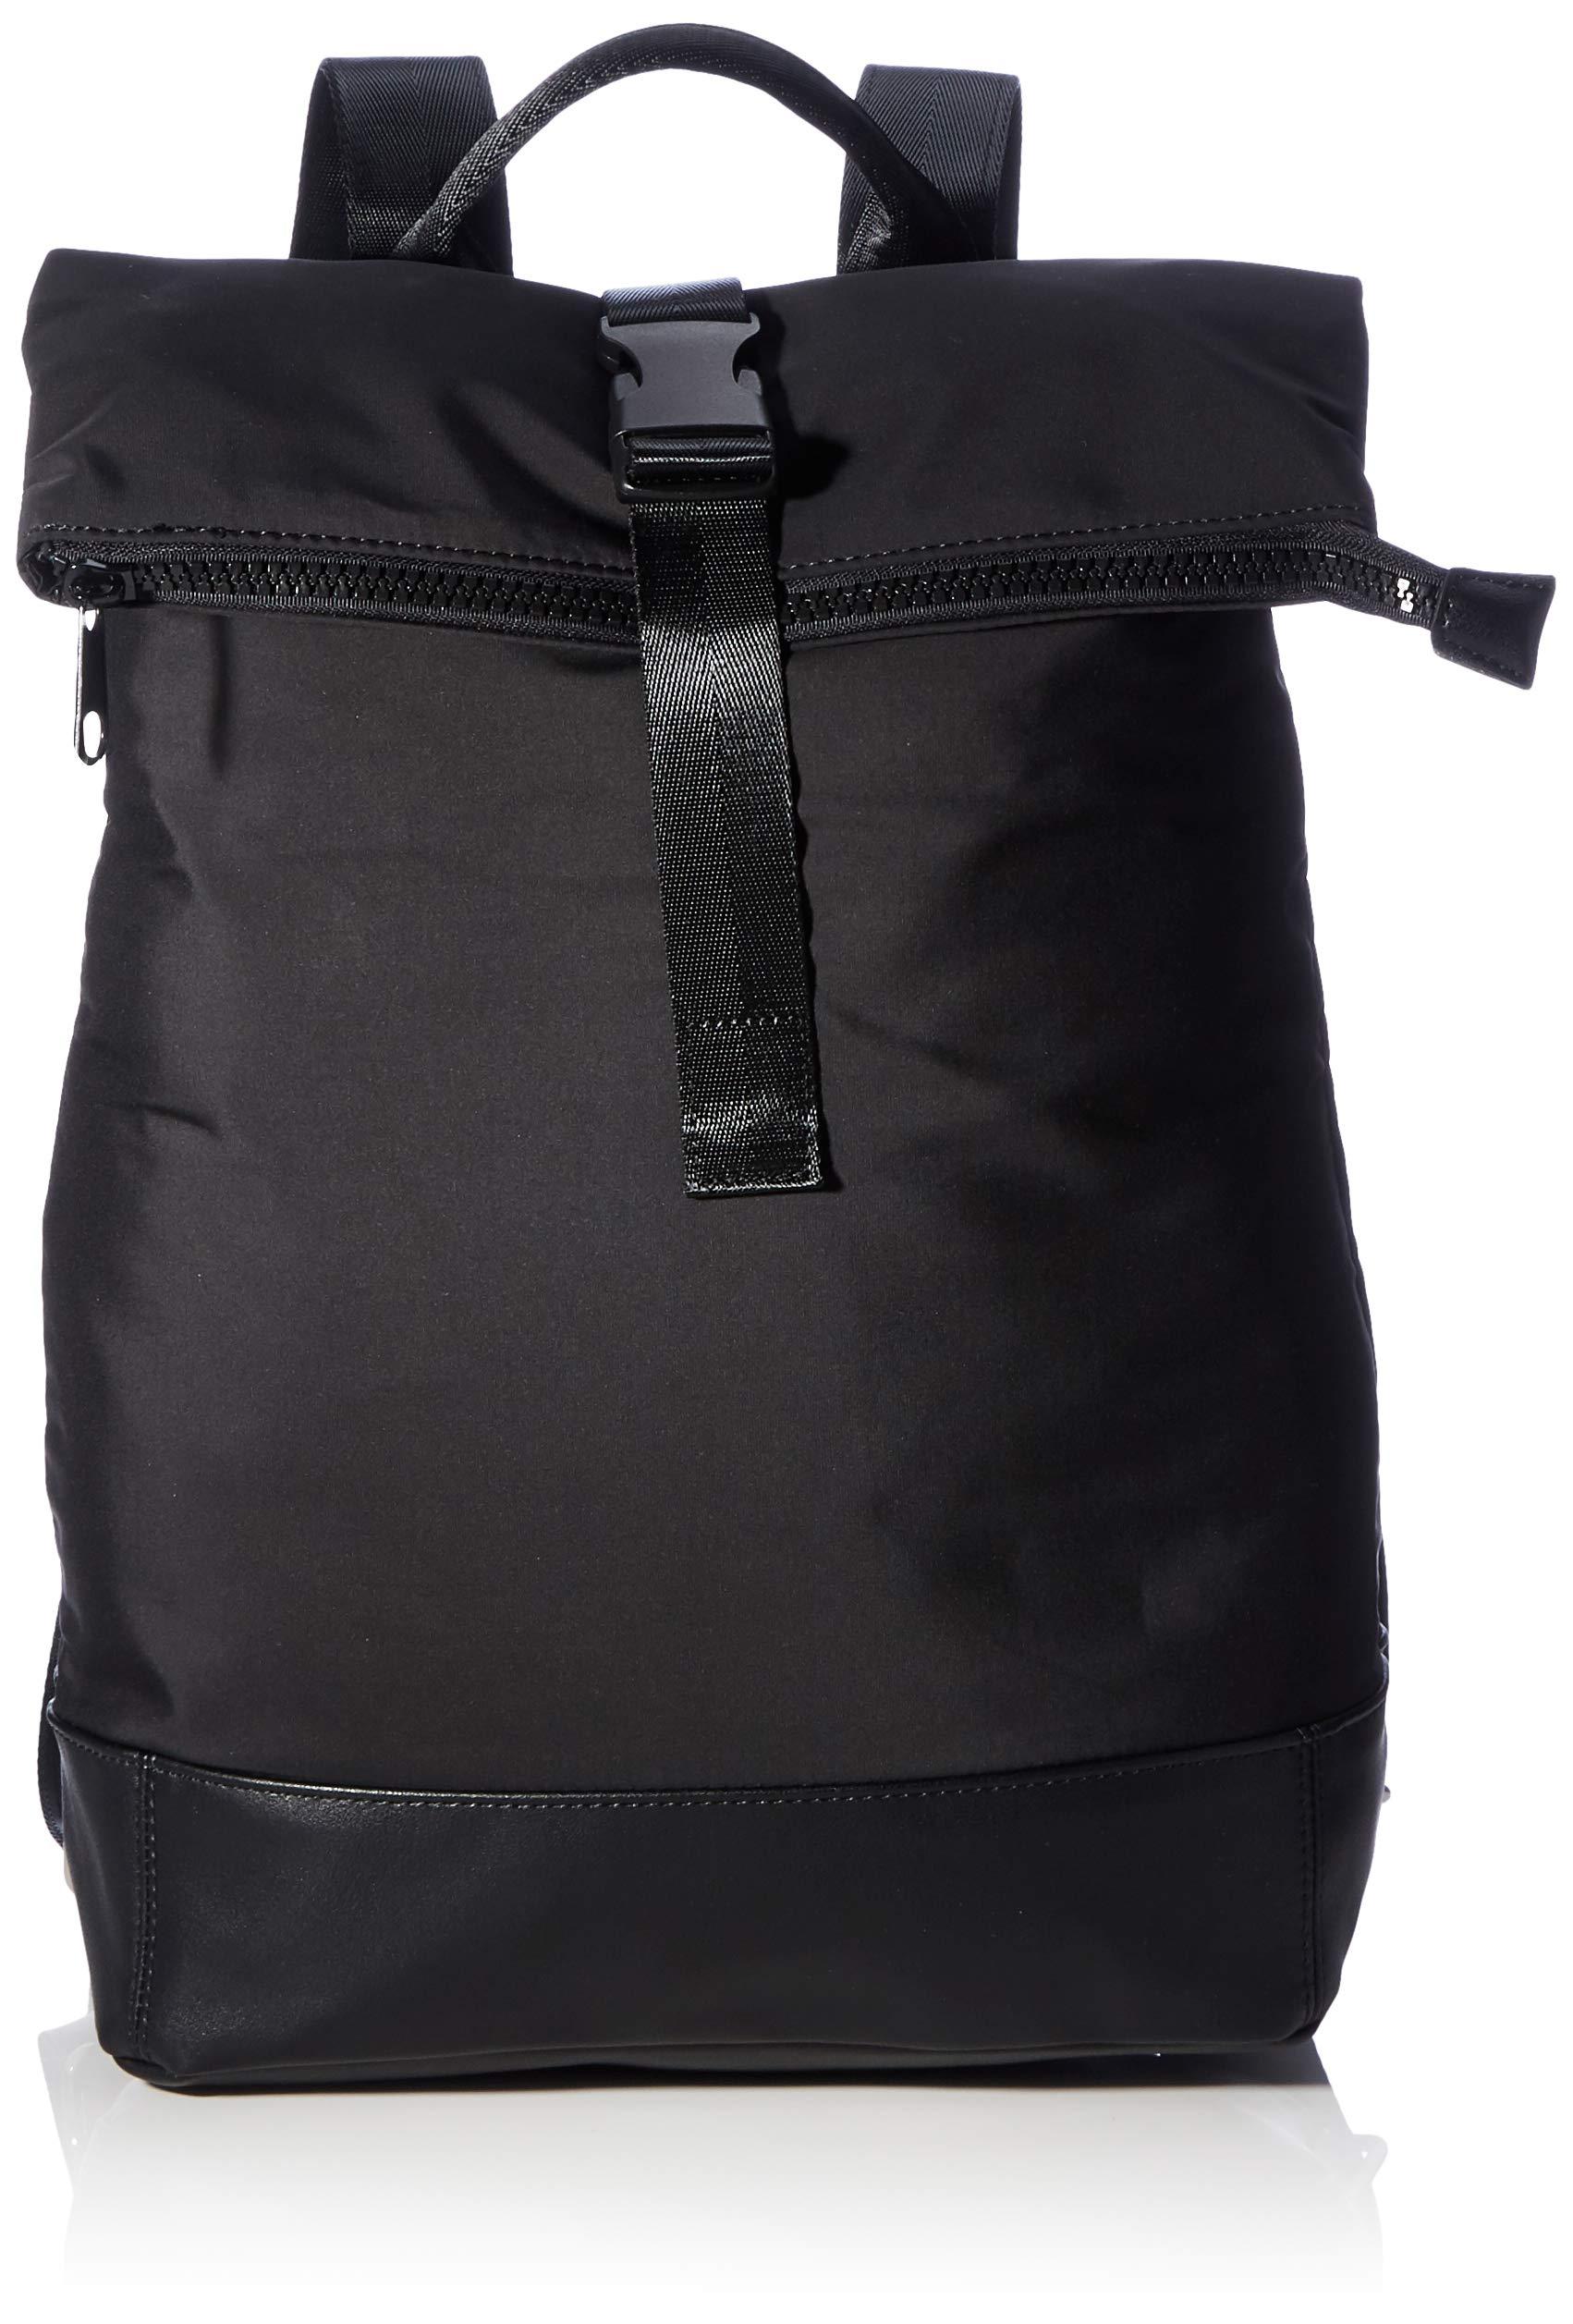 Vero Moda Vmaston Backpack in Black - Save 6% - Lyst